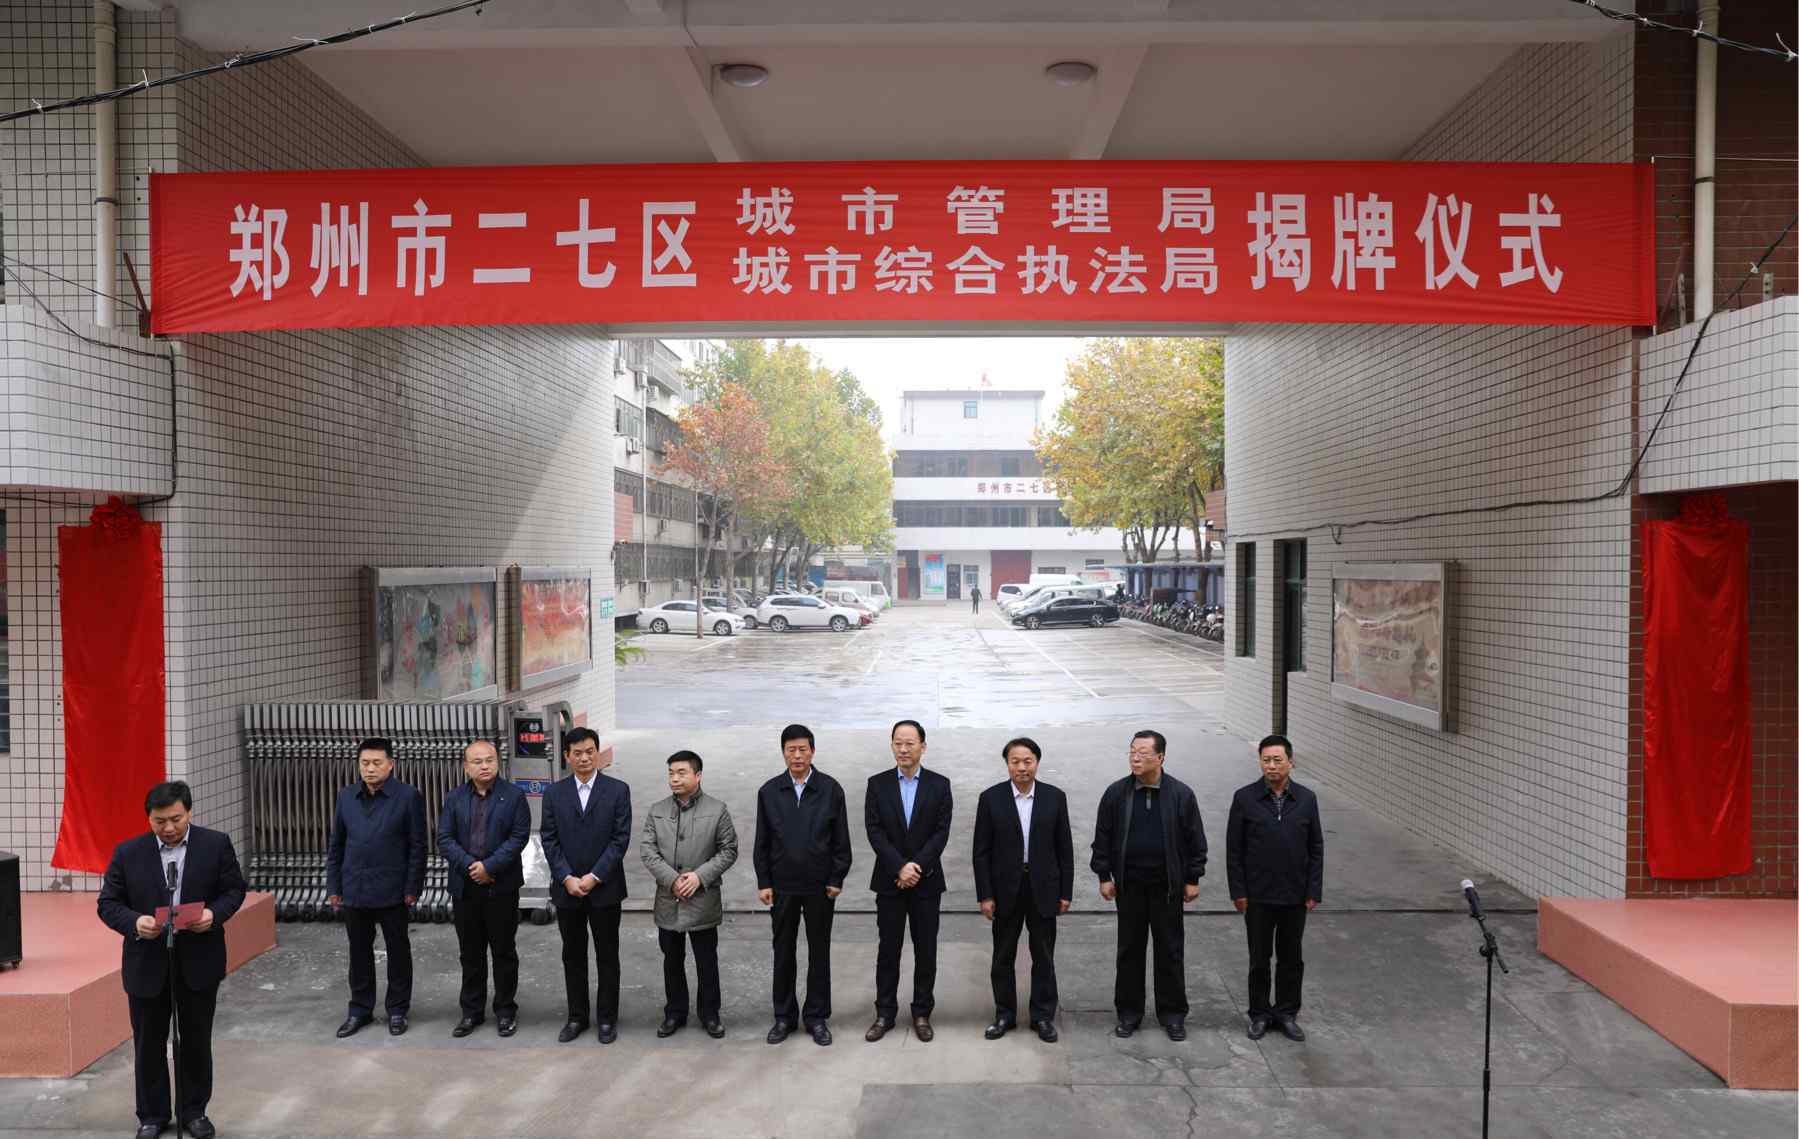 郑州市市政管理执法局 二七区城市管理局正式揭牌